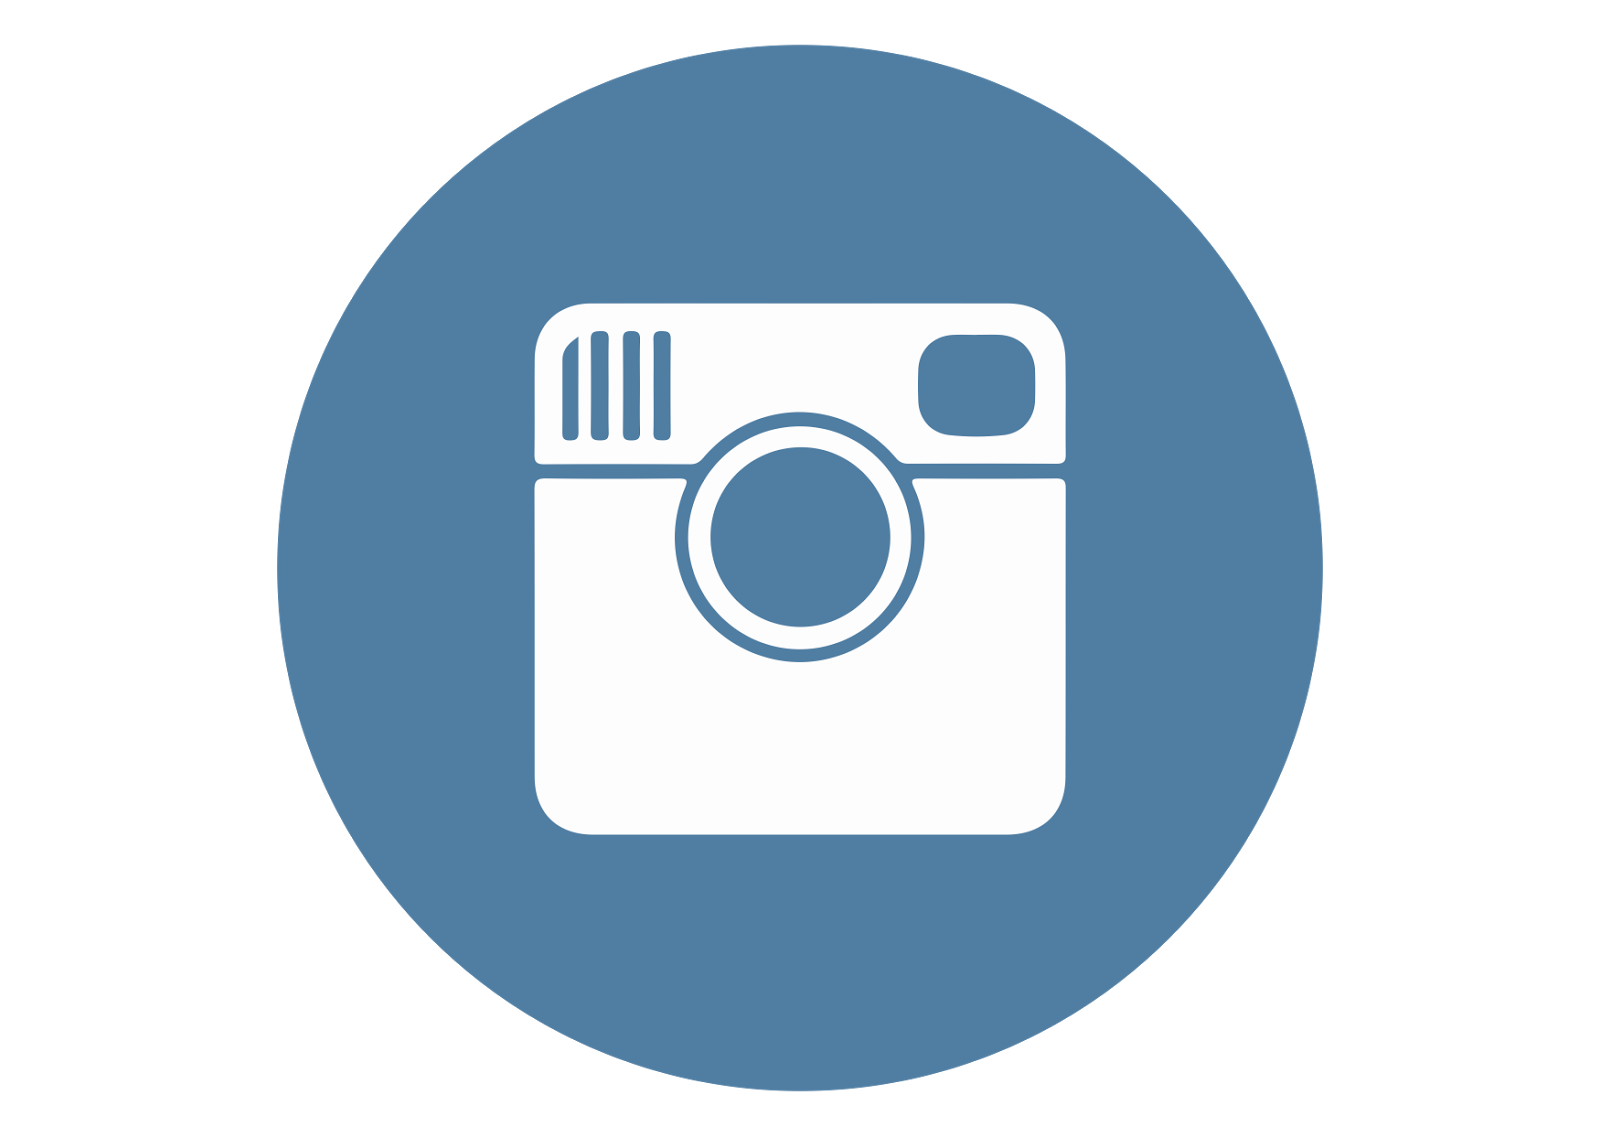 instagram logo svg free download